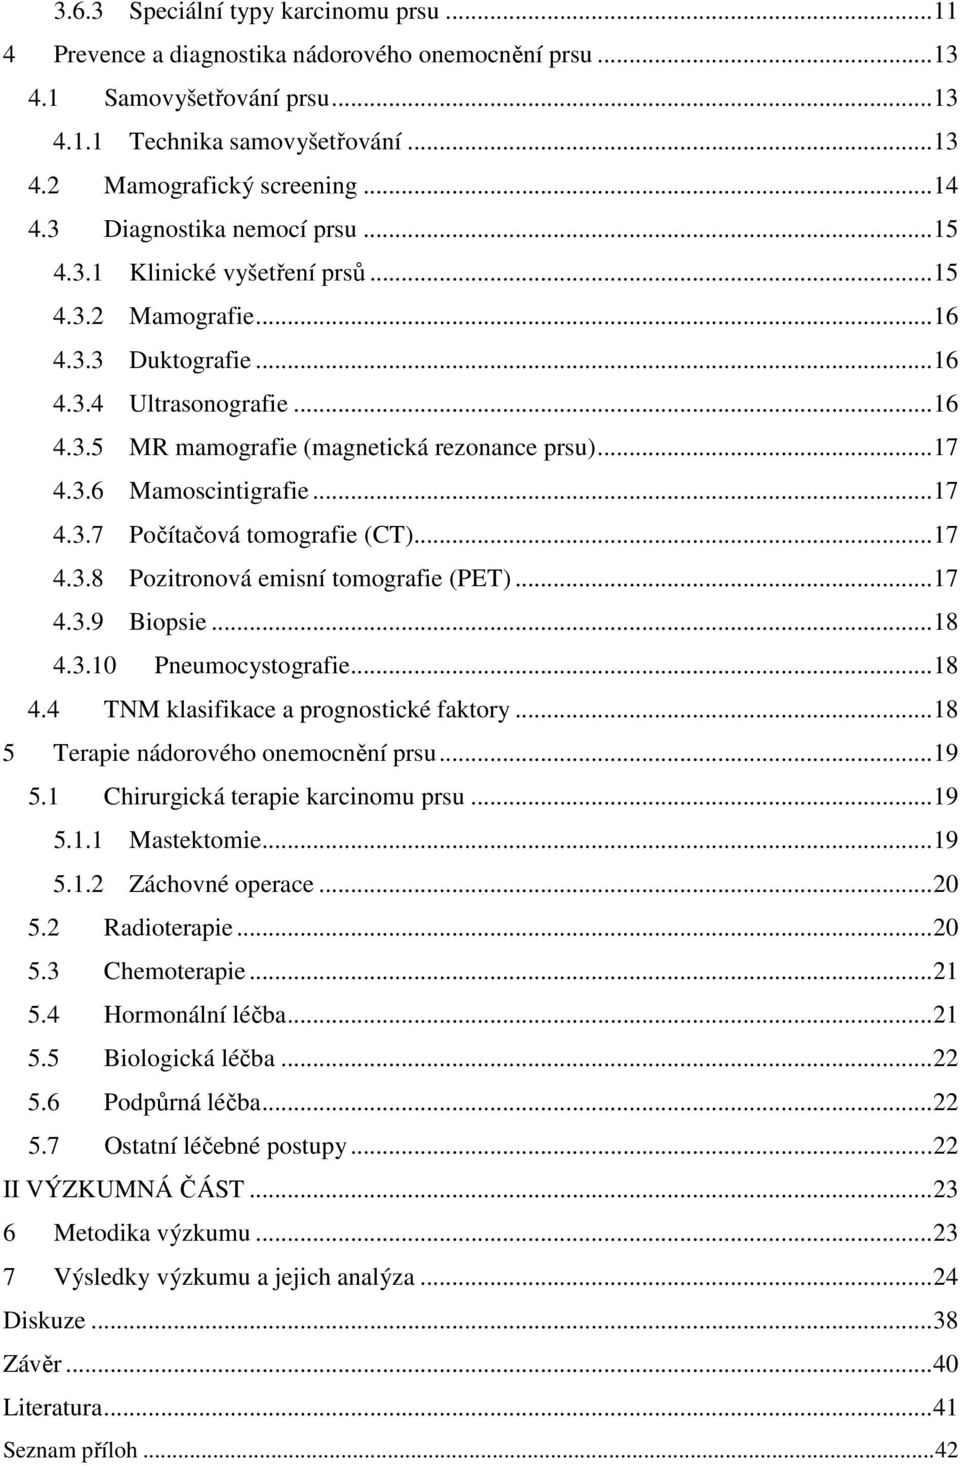 ..17 4.3.7 Počítačová tomografie (CT)...17 4.3.8 Pozitronová emisní tomografie (PET)...17 4.3.9 Biopsie...18 4.3.10 Pneumocystografie...18 4.4 TNM klasifikace a prognostické faktory.